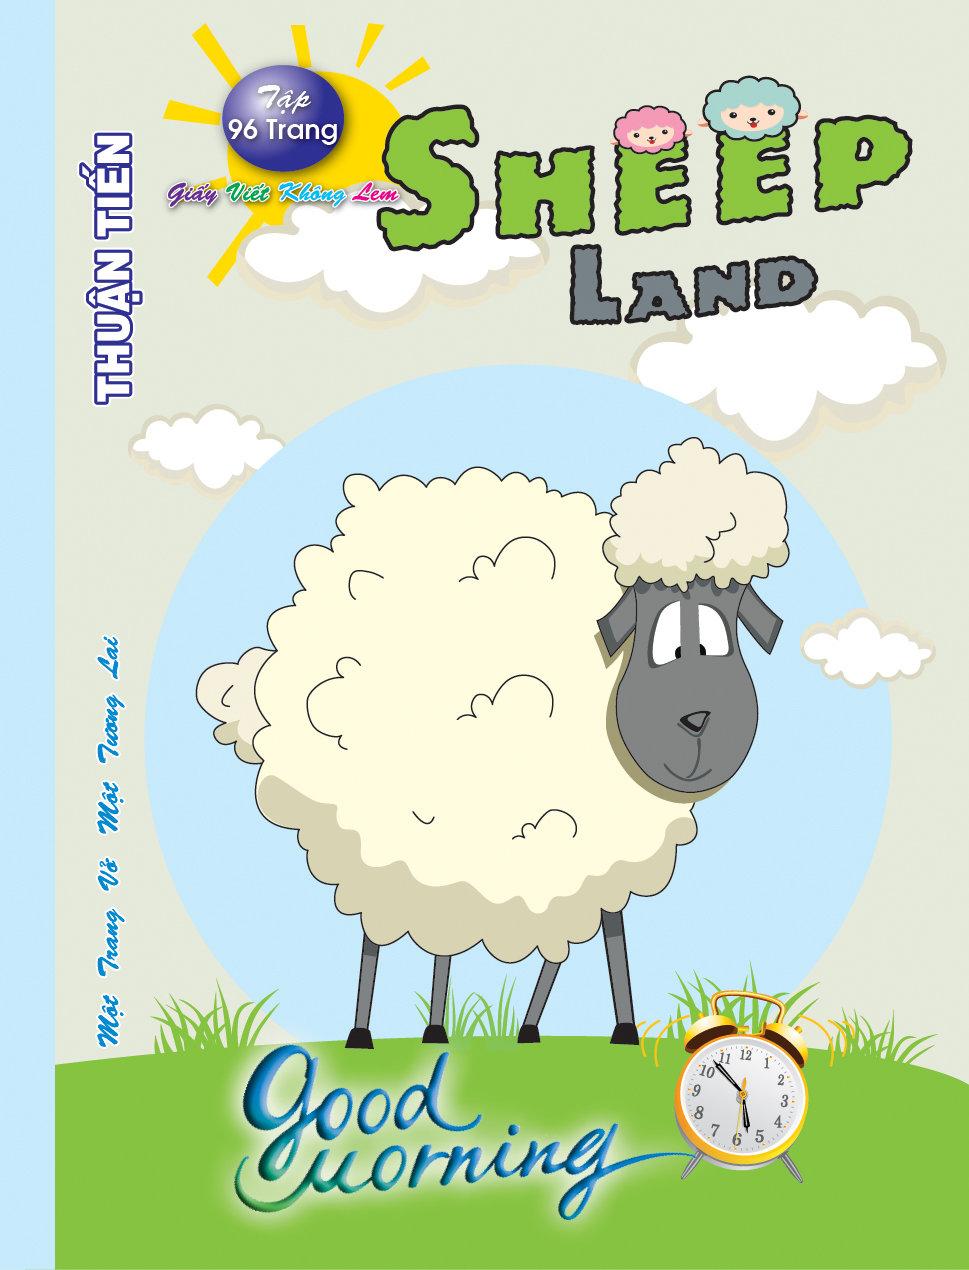 Lốc 10 Quyển Tập 96 trang Sheep land  (mẫu ngẫu nhiên)